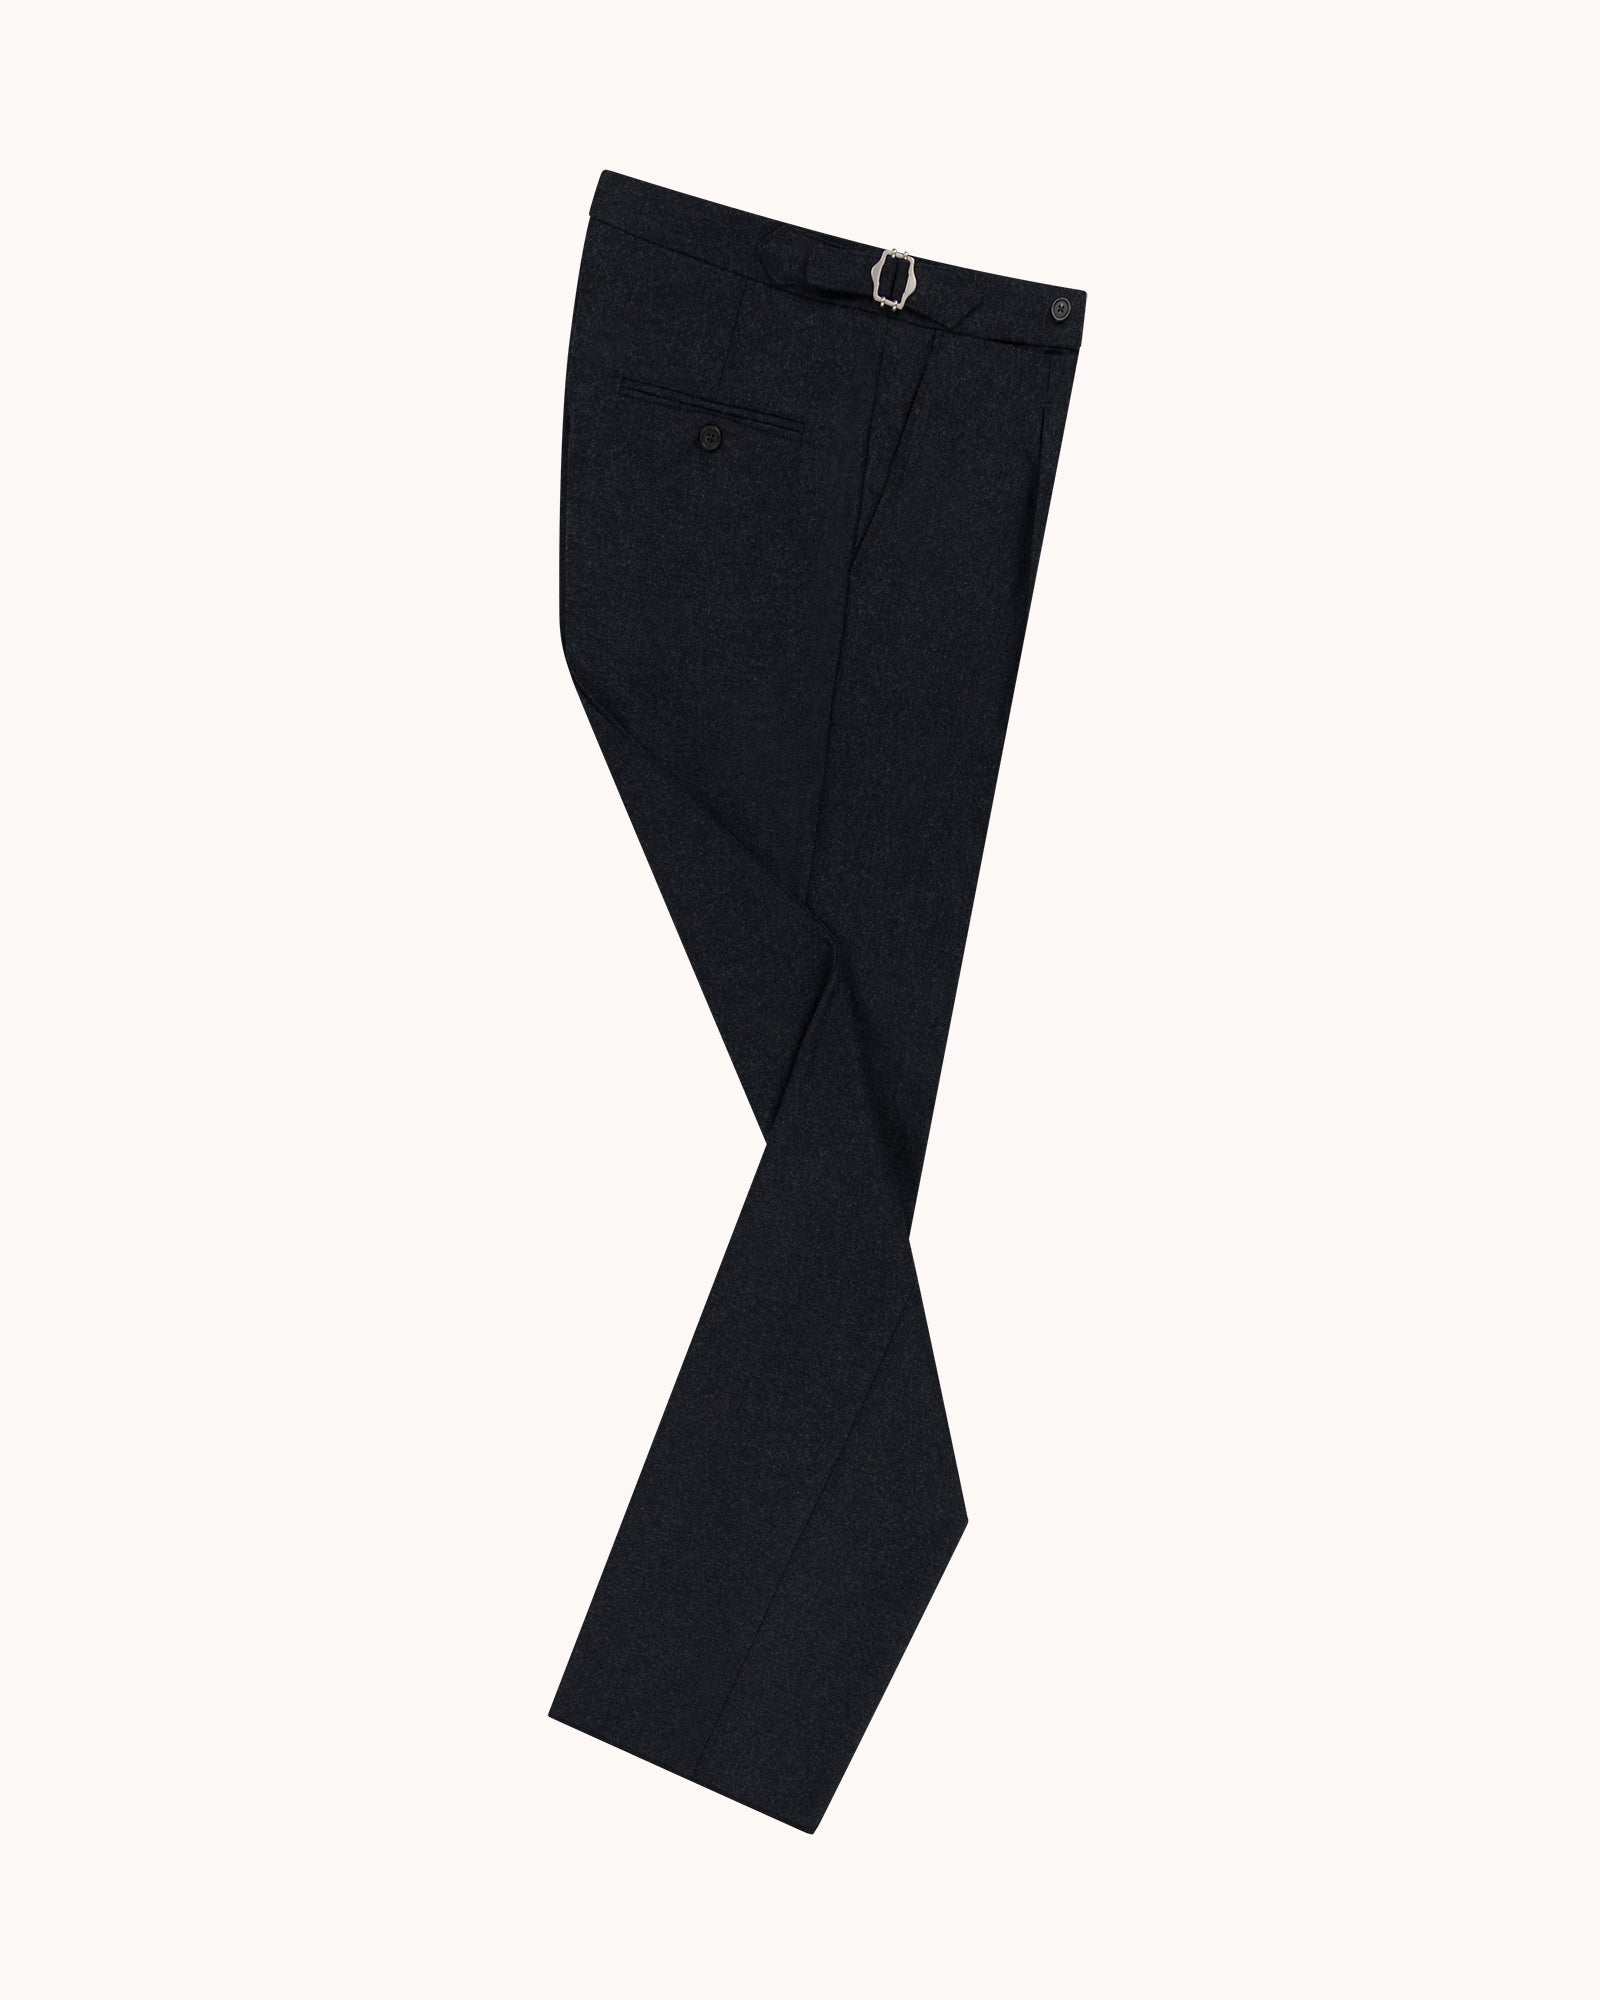 Single Pleat Trouser - Charcoal Grey Woollen Flannel